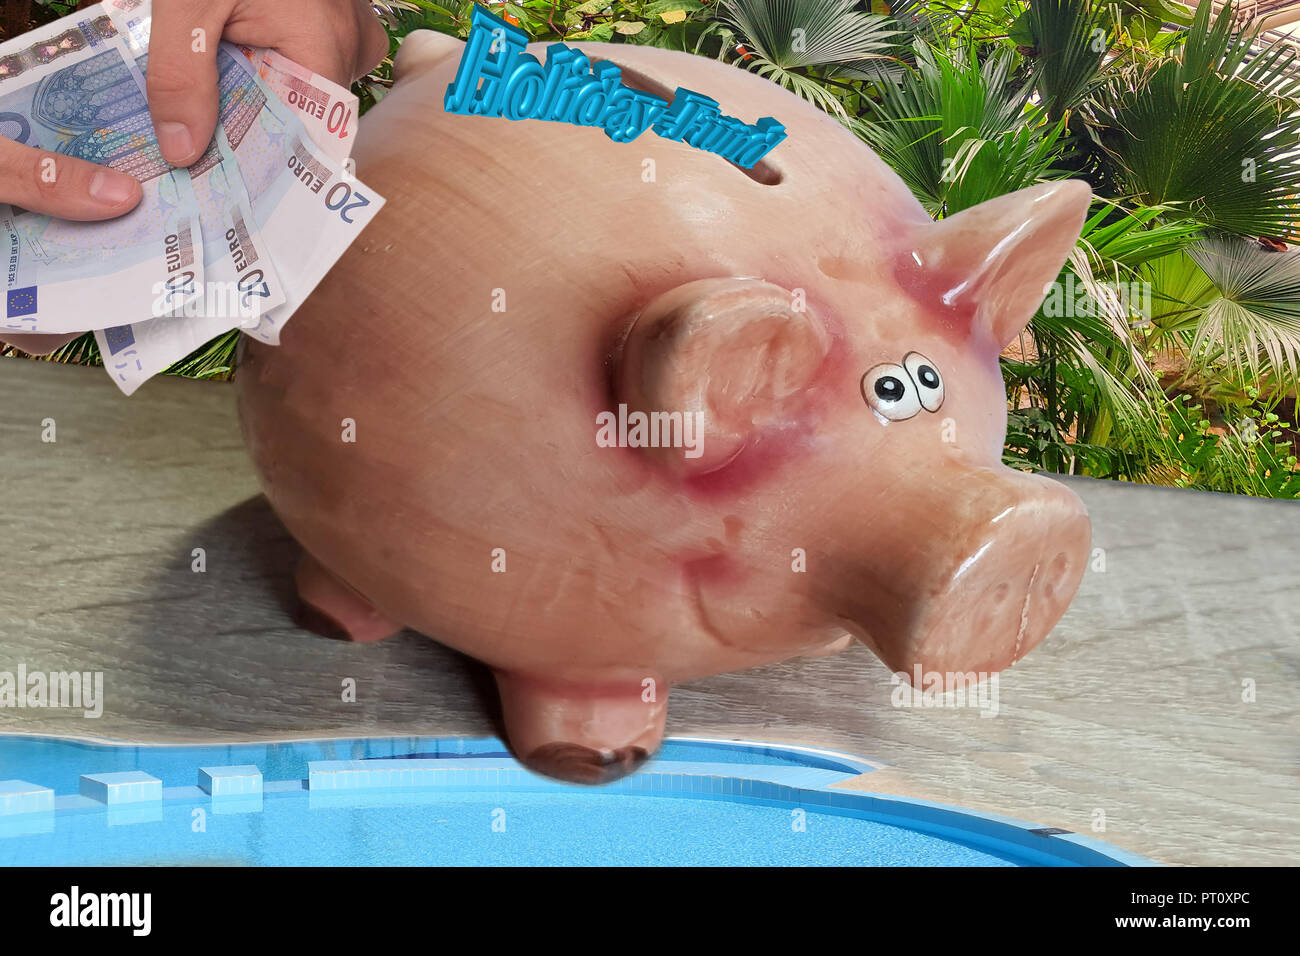 Sparschwein mit Beschriftung in Englisch Urlaub Fonds Stockfotografie -  Alamy